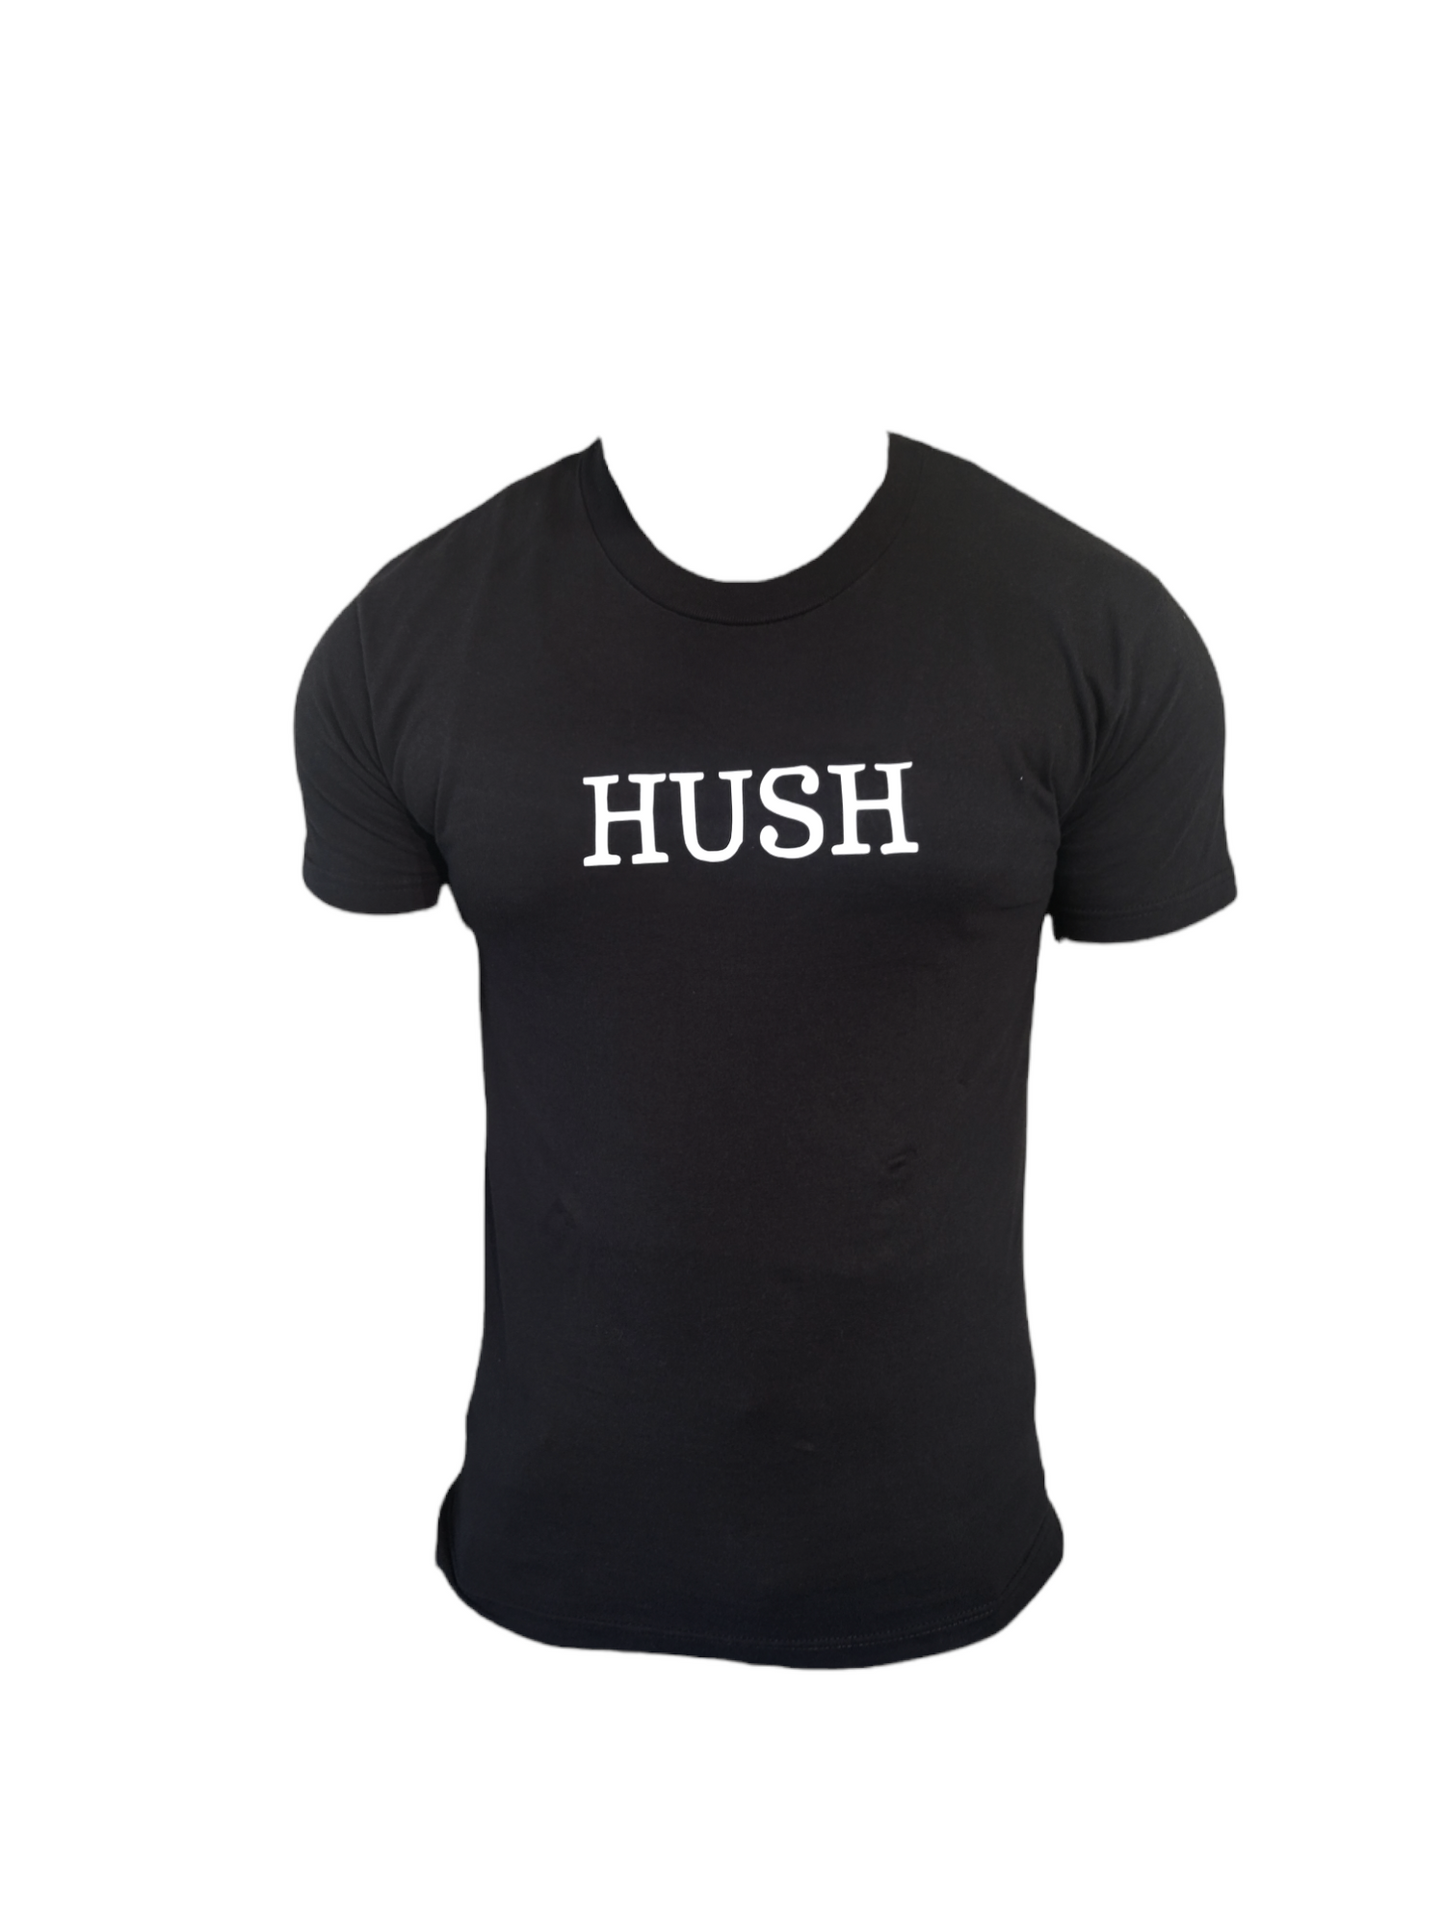 HUSH t-shirt men